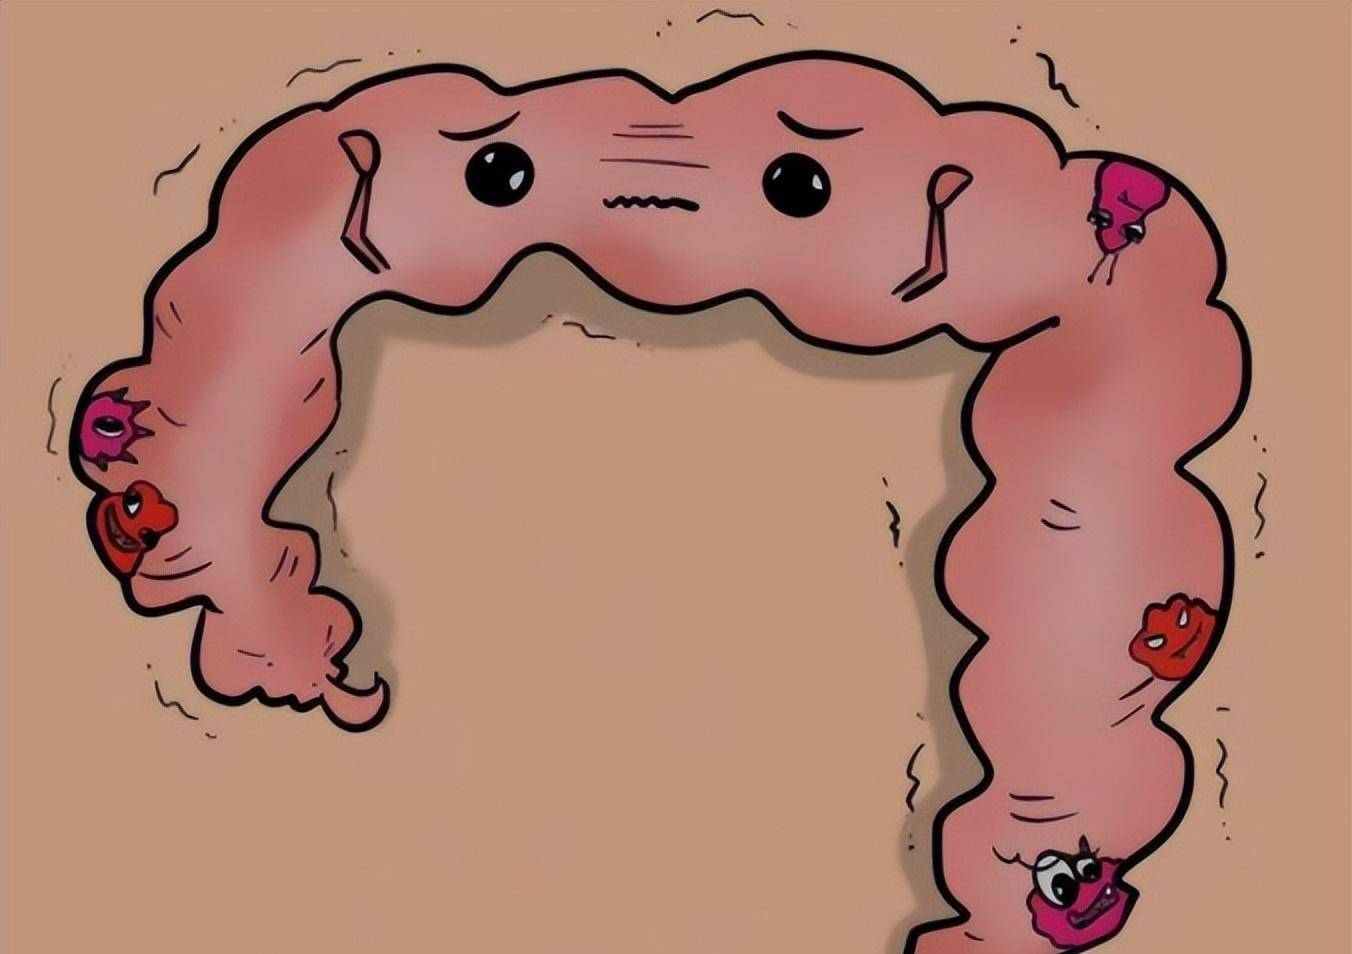 肠癌的大便图片 粘液图片